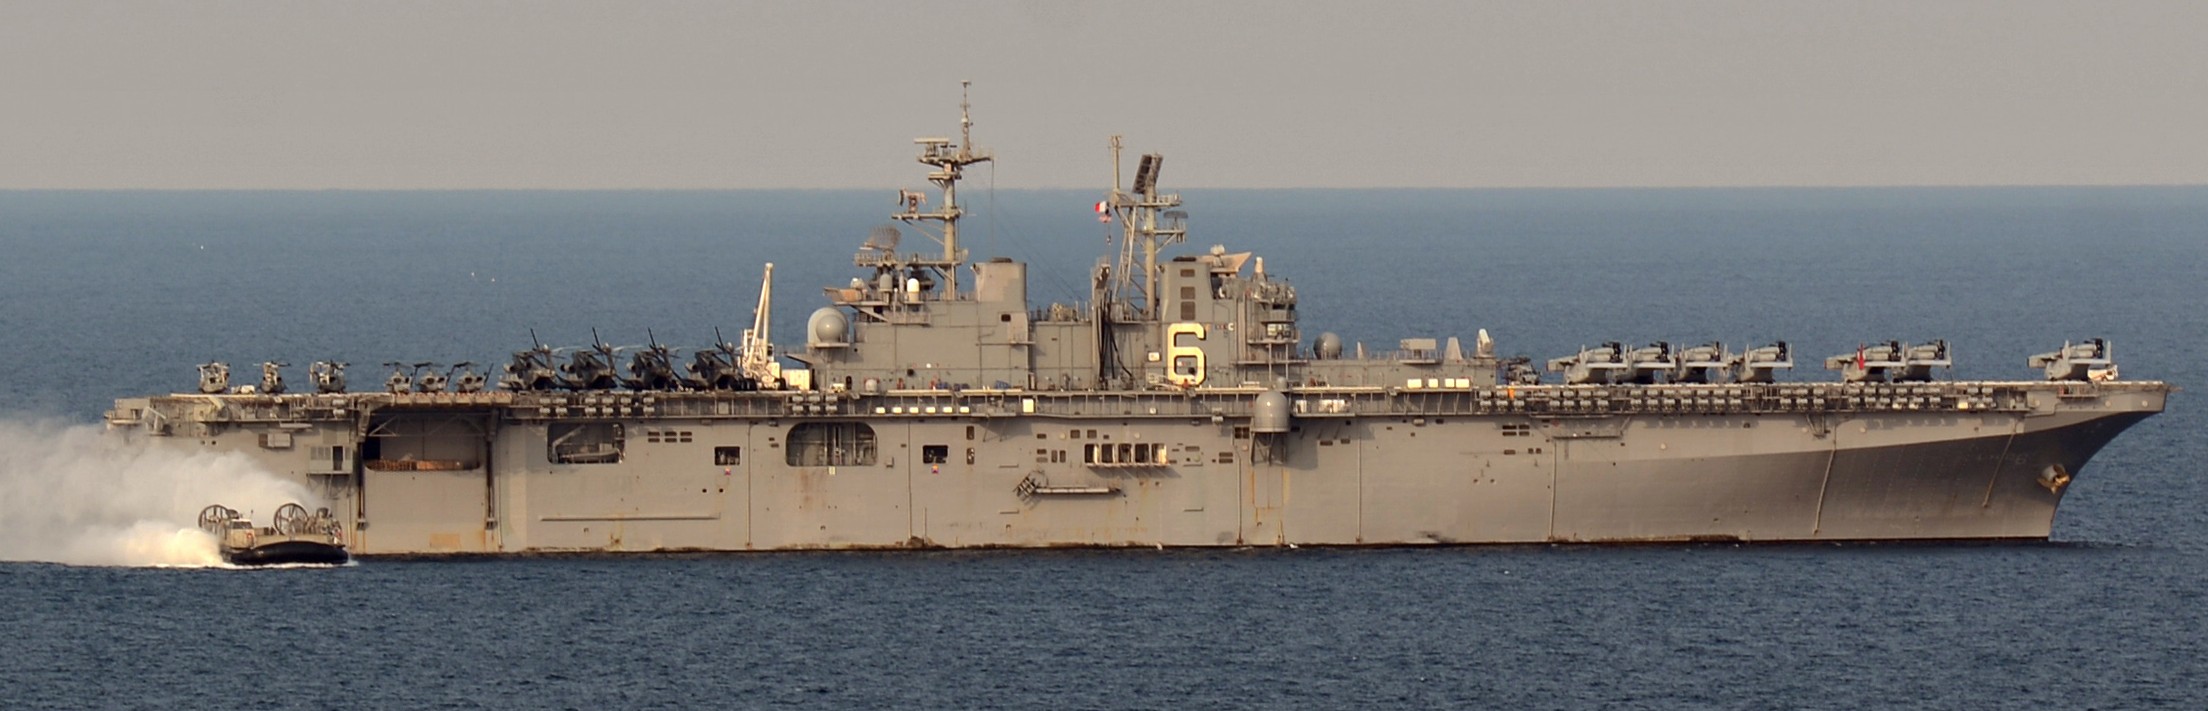 lhd-6 uss bonhomme richard amphibious assault ship landing helicopter dock wasp class 161